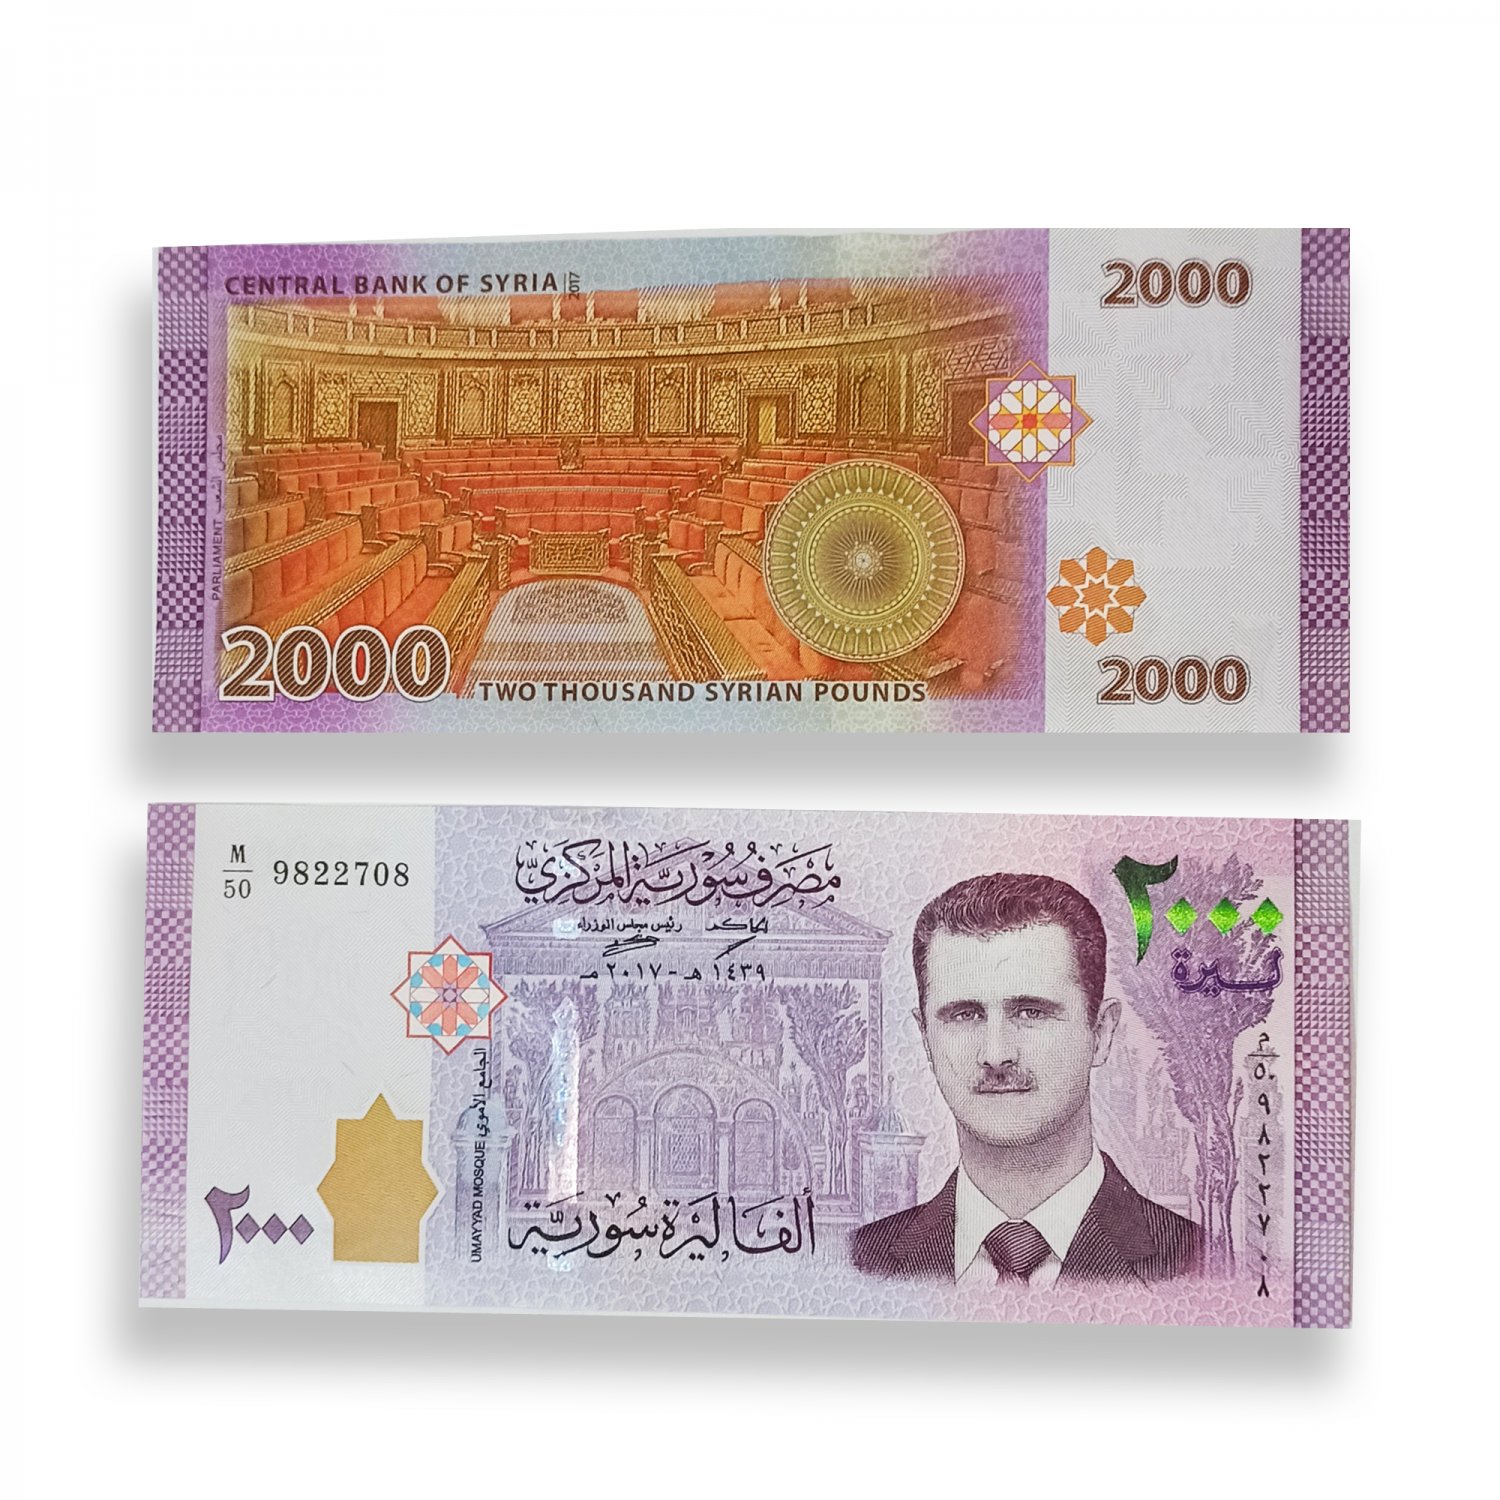 2000 Pounds Unc Banknote